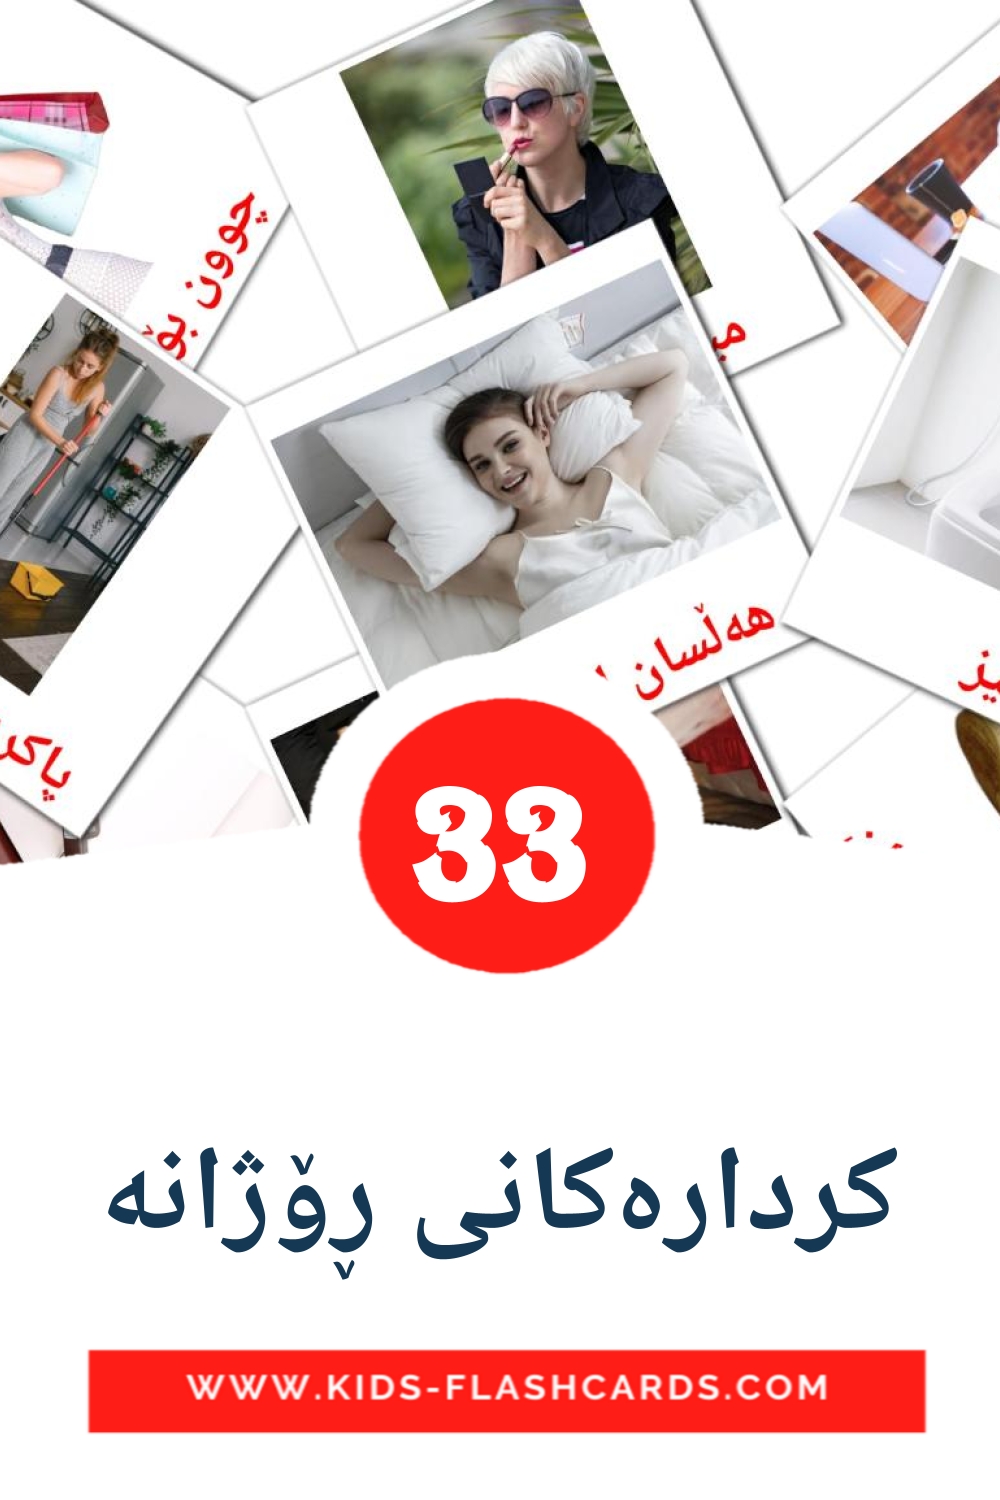 33 Cartões com Imagens de کردارەکانی ڕۆژانە para Jardim de Infância em curdo(sorani)